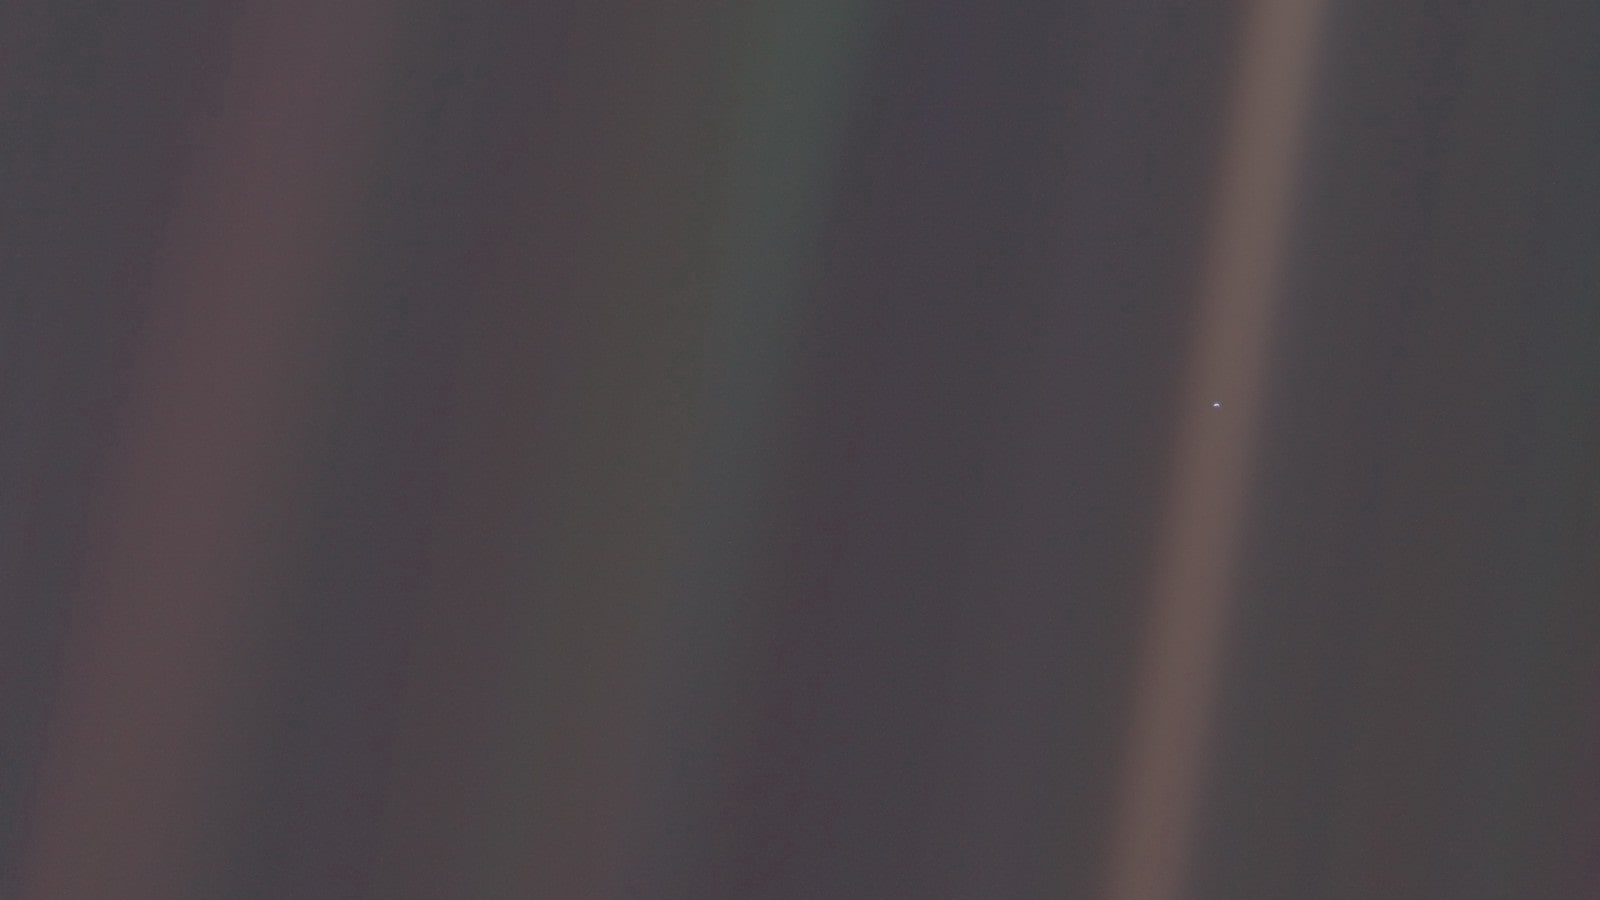 Planeta Tierra desde la sonda Voyager